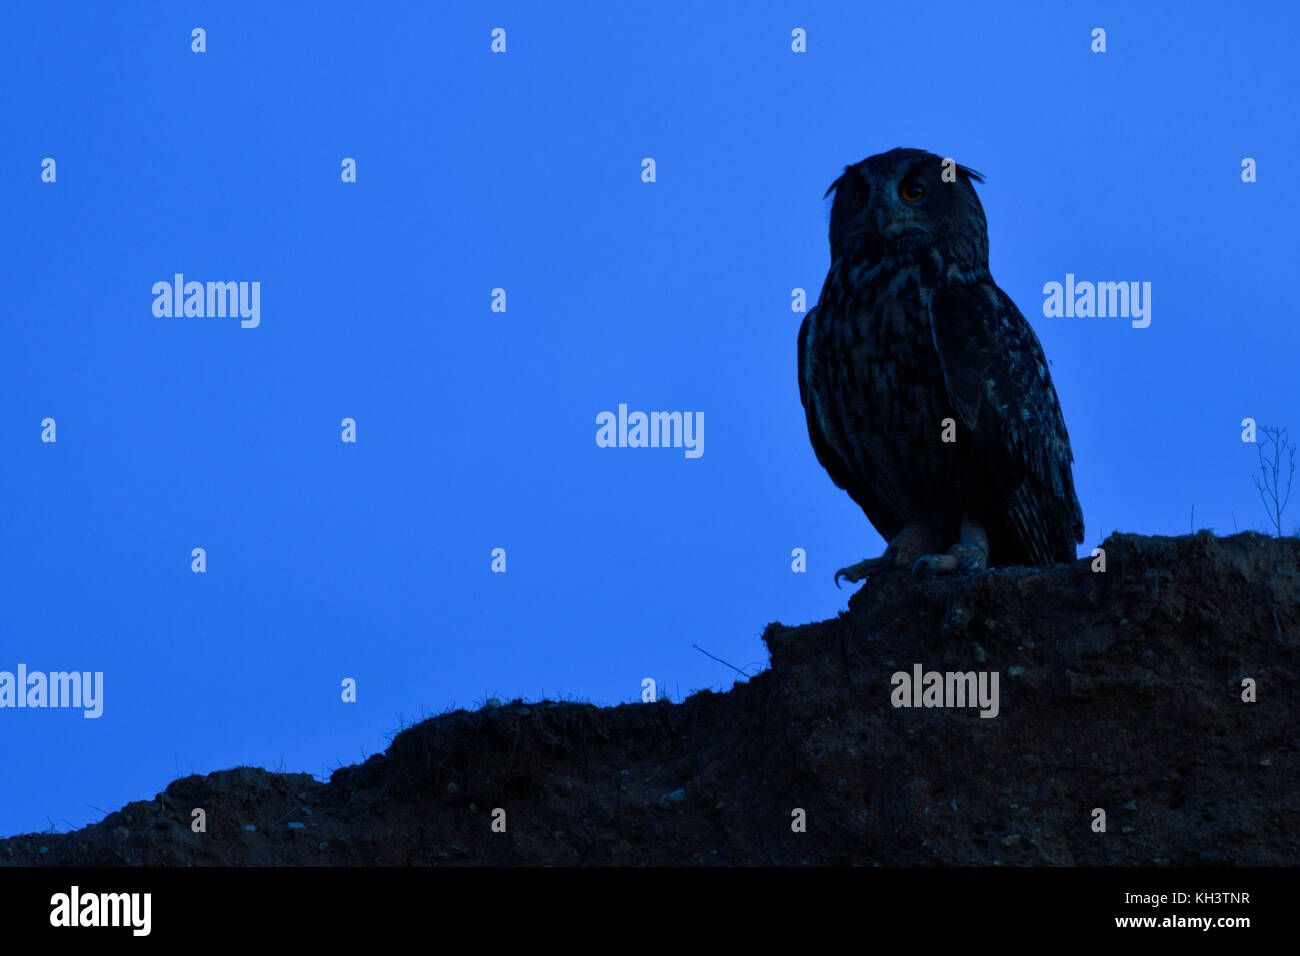 Grand / owl Bubo bubo europaeischer uhu ( ), assise sur le bord d'une pente d'une carrière de sable, silhouetted against blue sky, de la faune, de l'Union européenne Banque D'Images